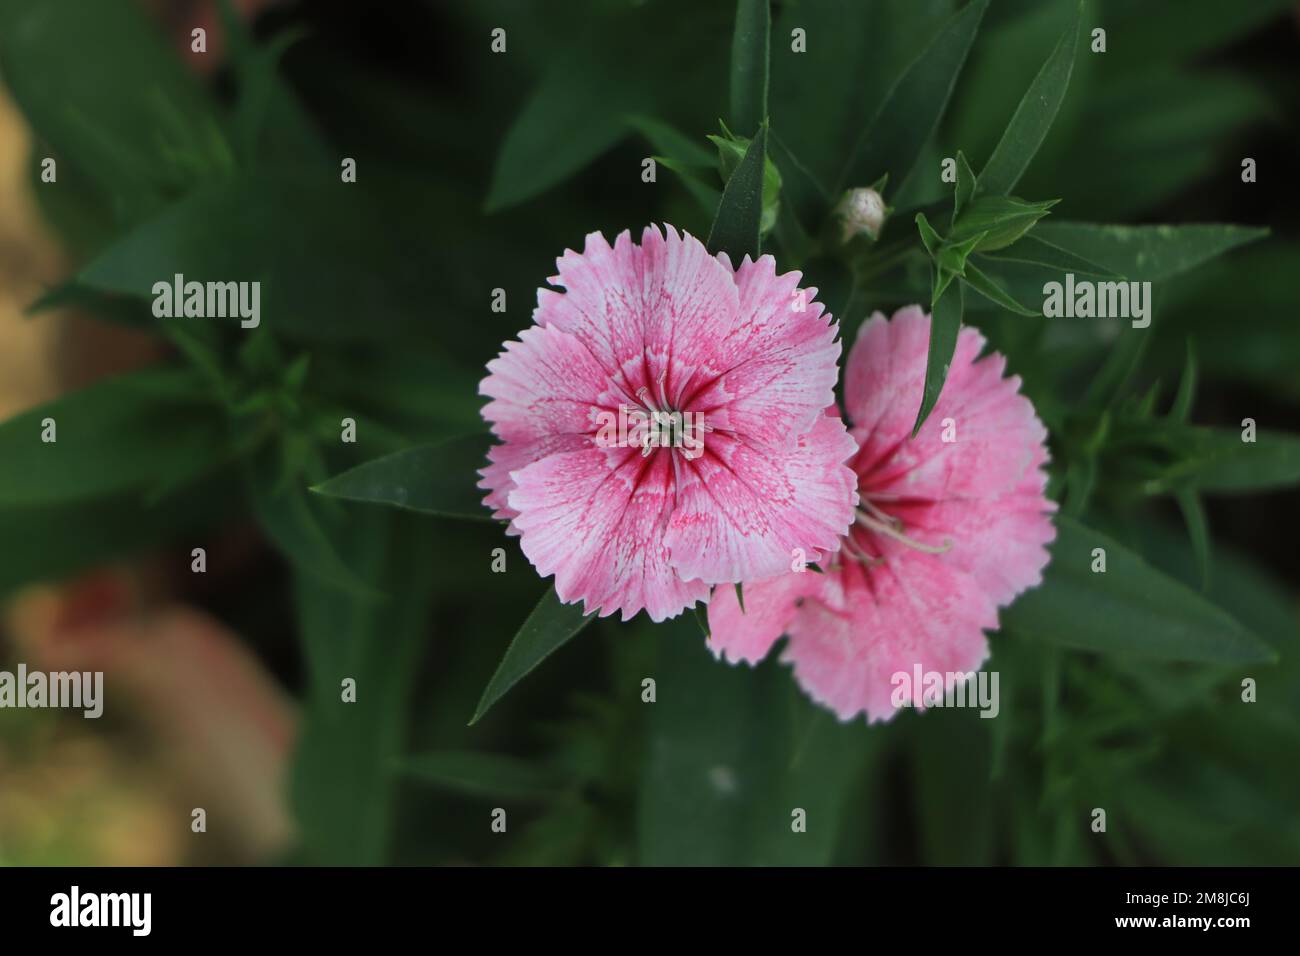 Cheddar pink dianthus flower in garden Stock Photo